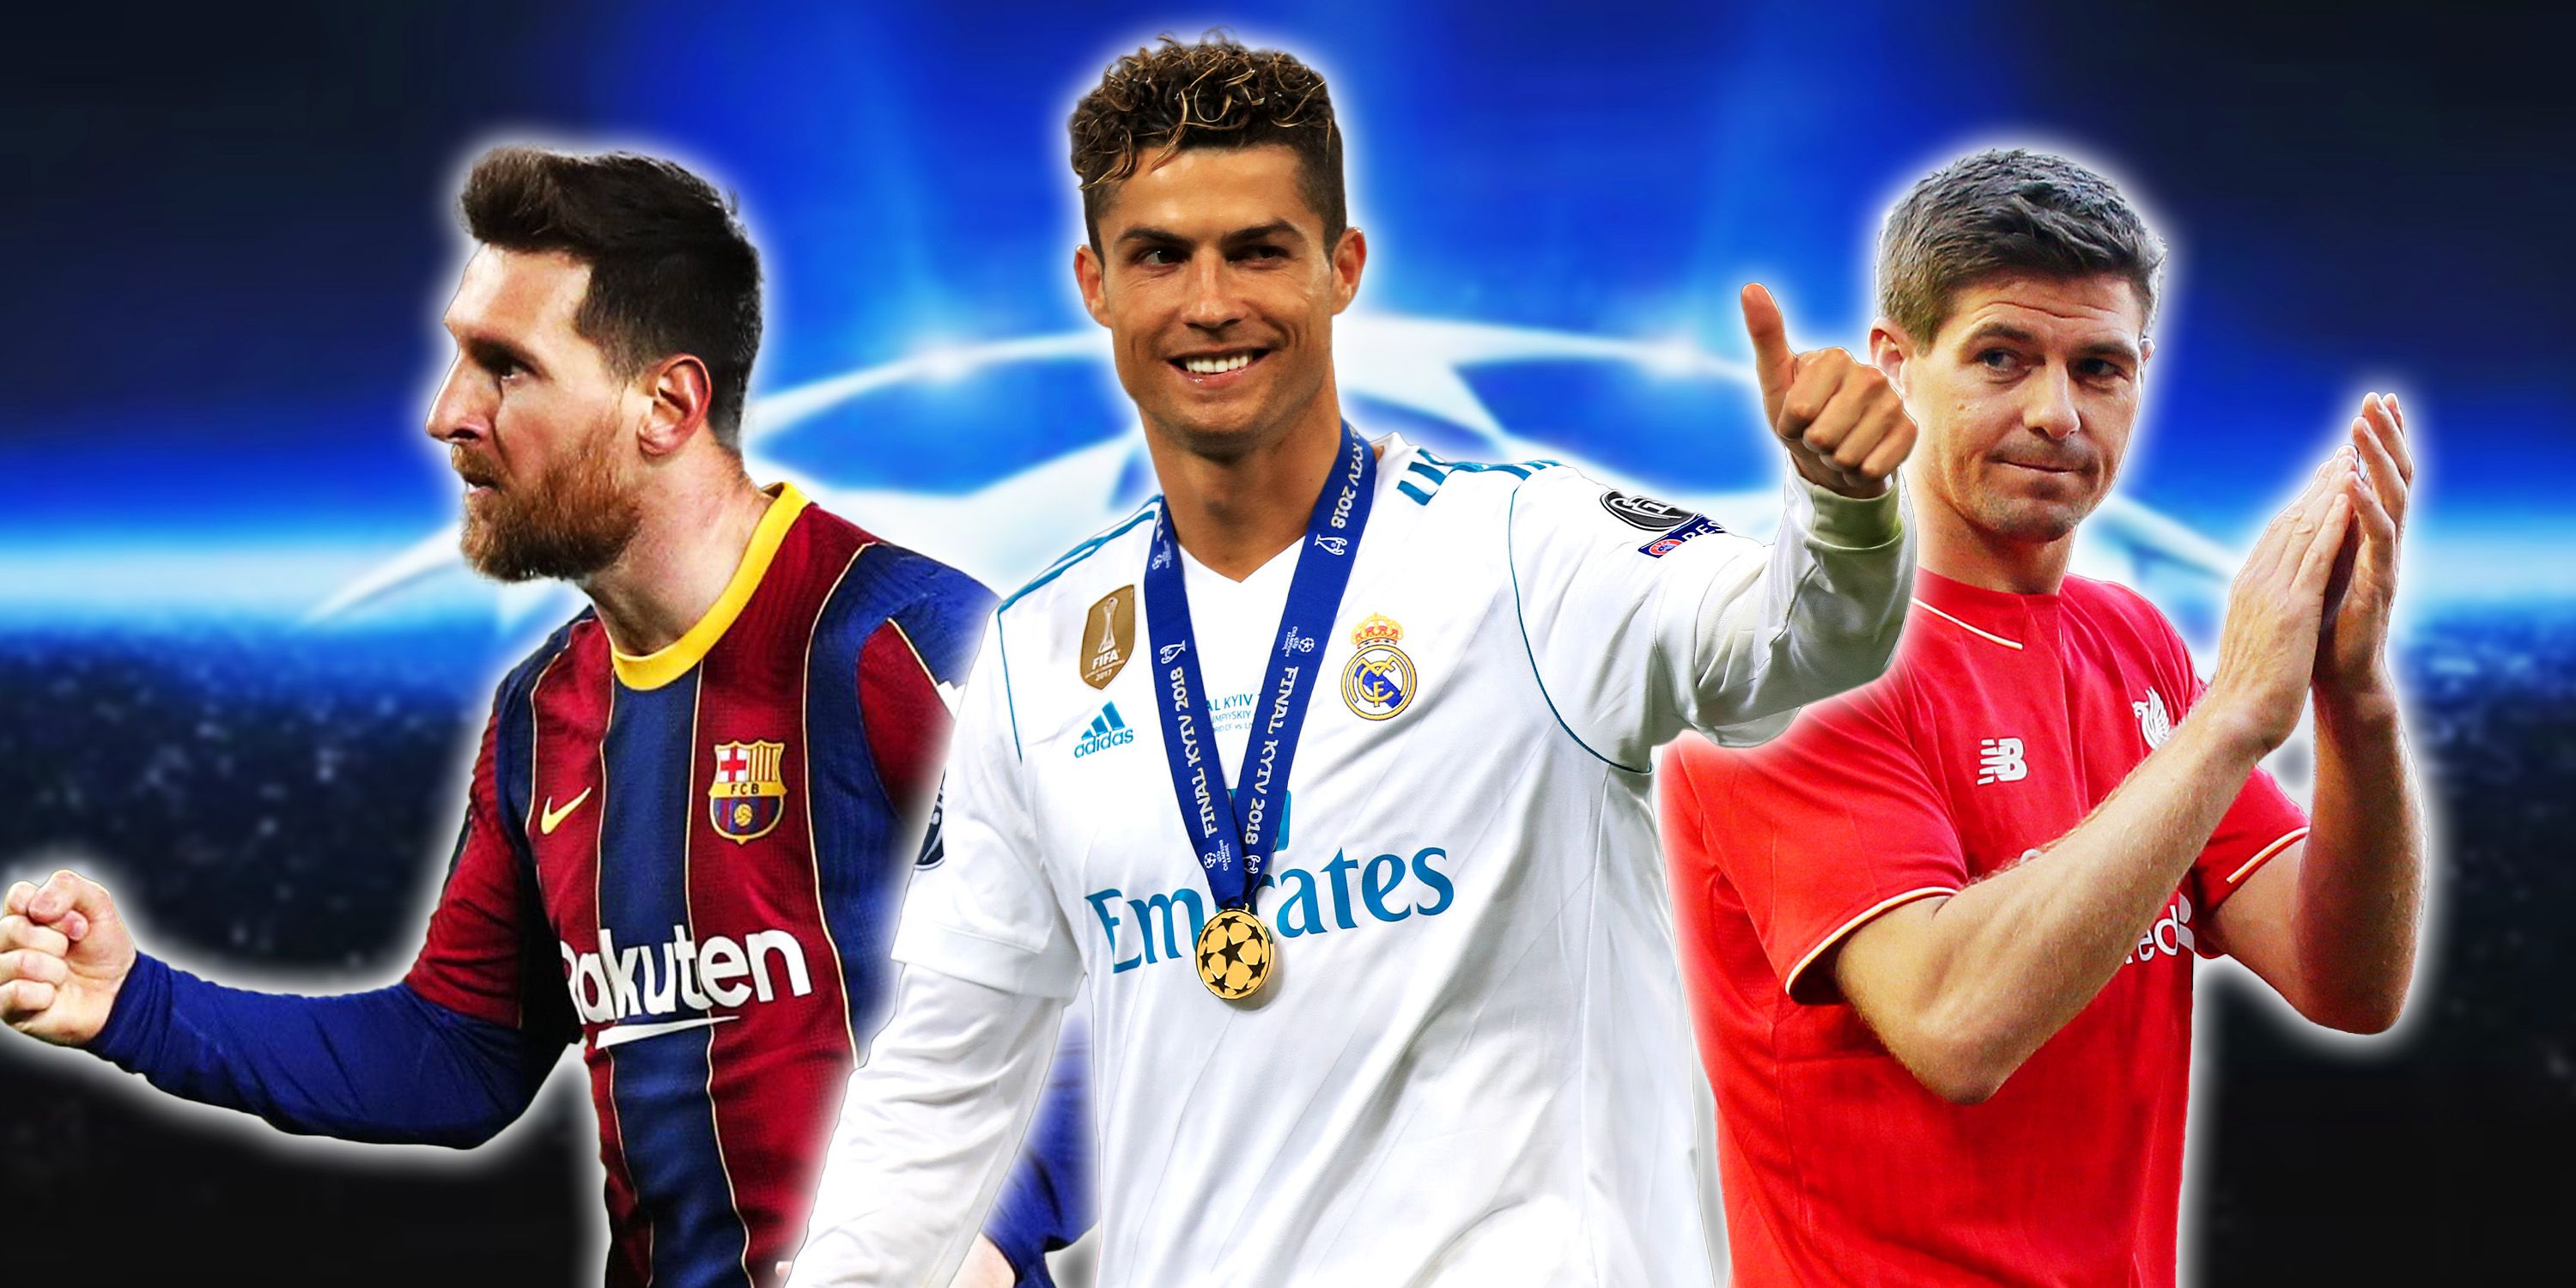 Collage featuring Lionel Messi, Cristiano Ronaldo and Steven Gerrard.